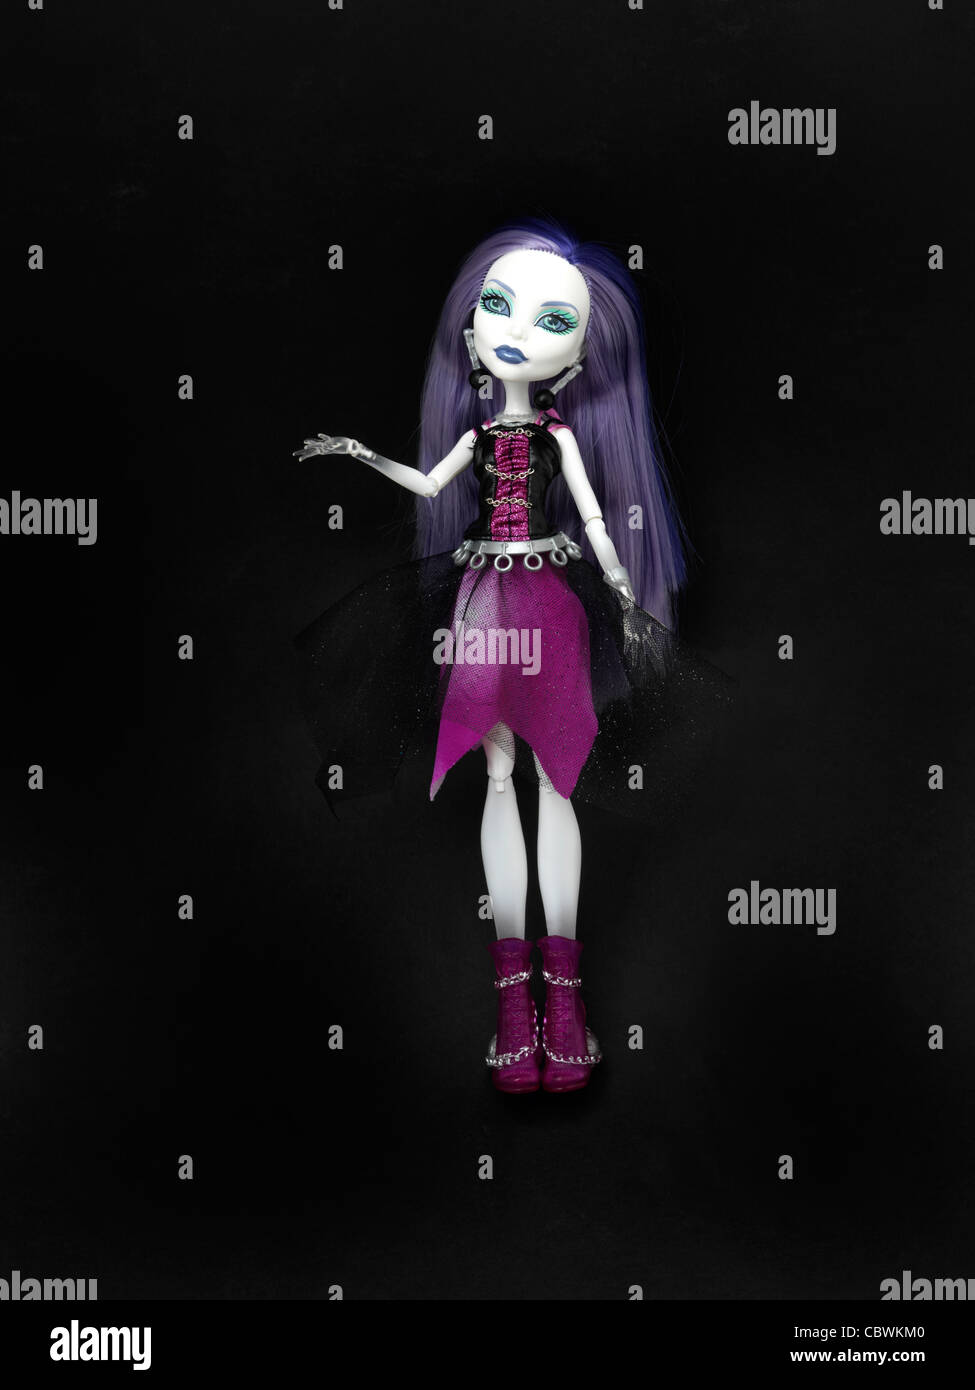 Monster High Puppe Spectra Vondergeist Tochter eines Geistes mit lila Haare  und weiße Haut und transparenten Hände Stockfotografie - Alamy